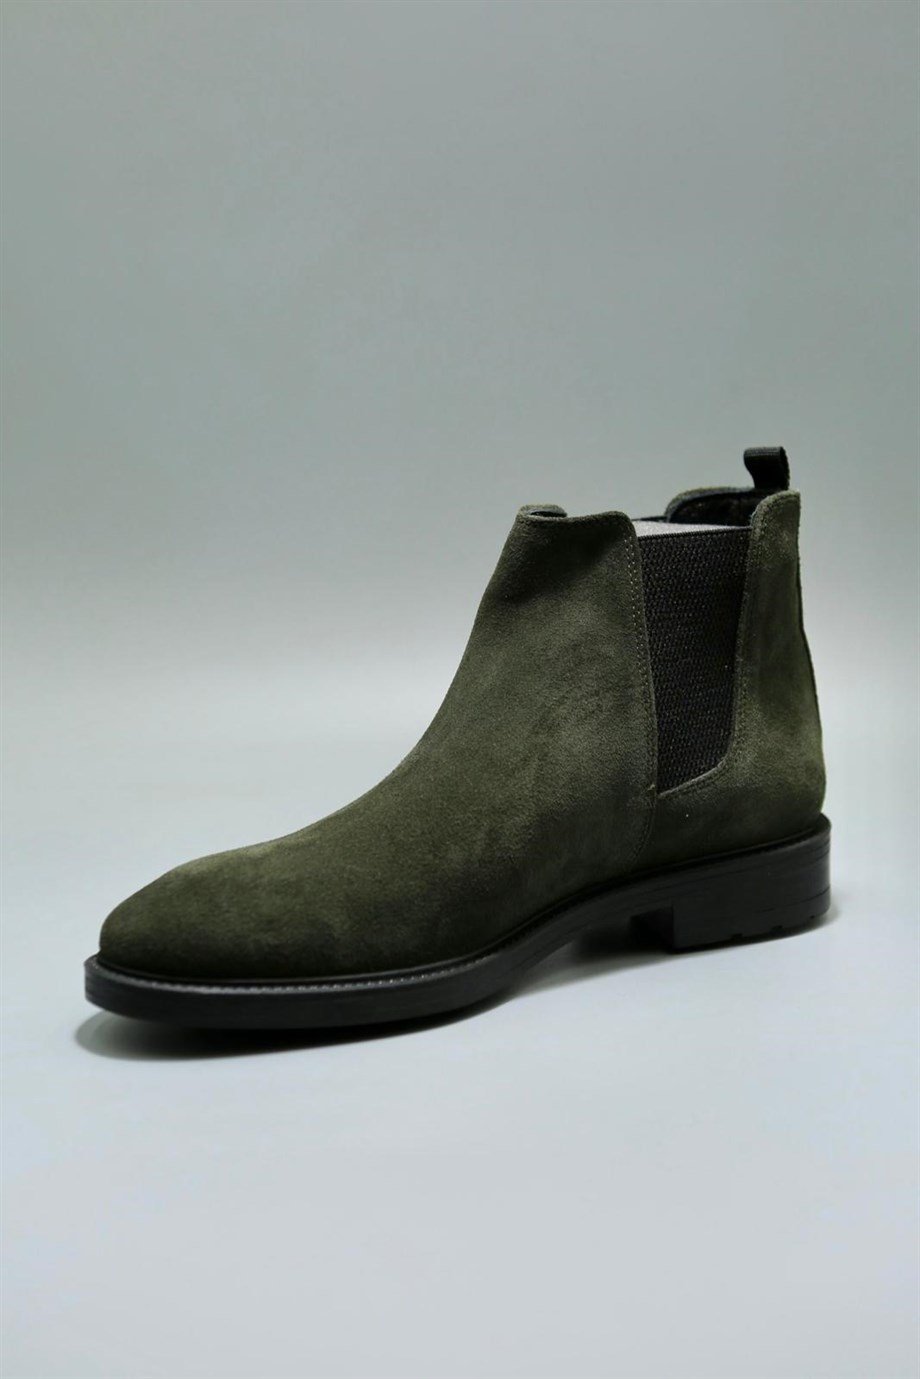 Kebo Yeşil Süet Erkek Deri Ayakkabı